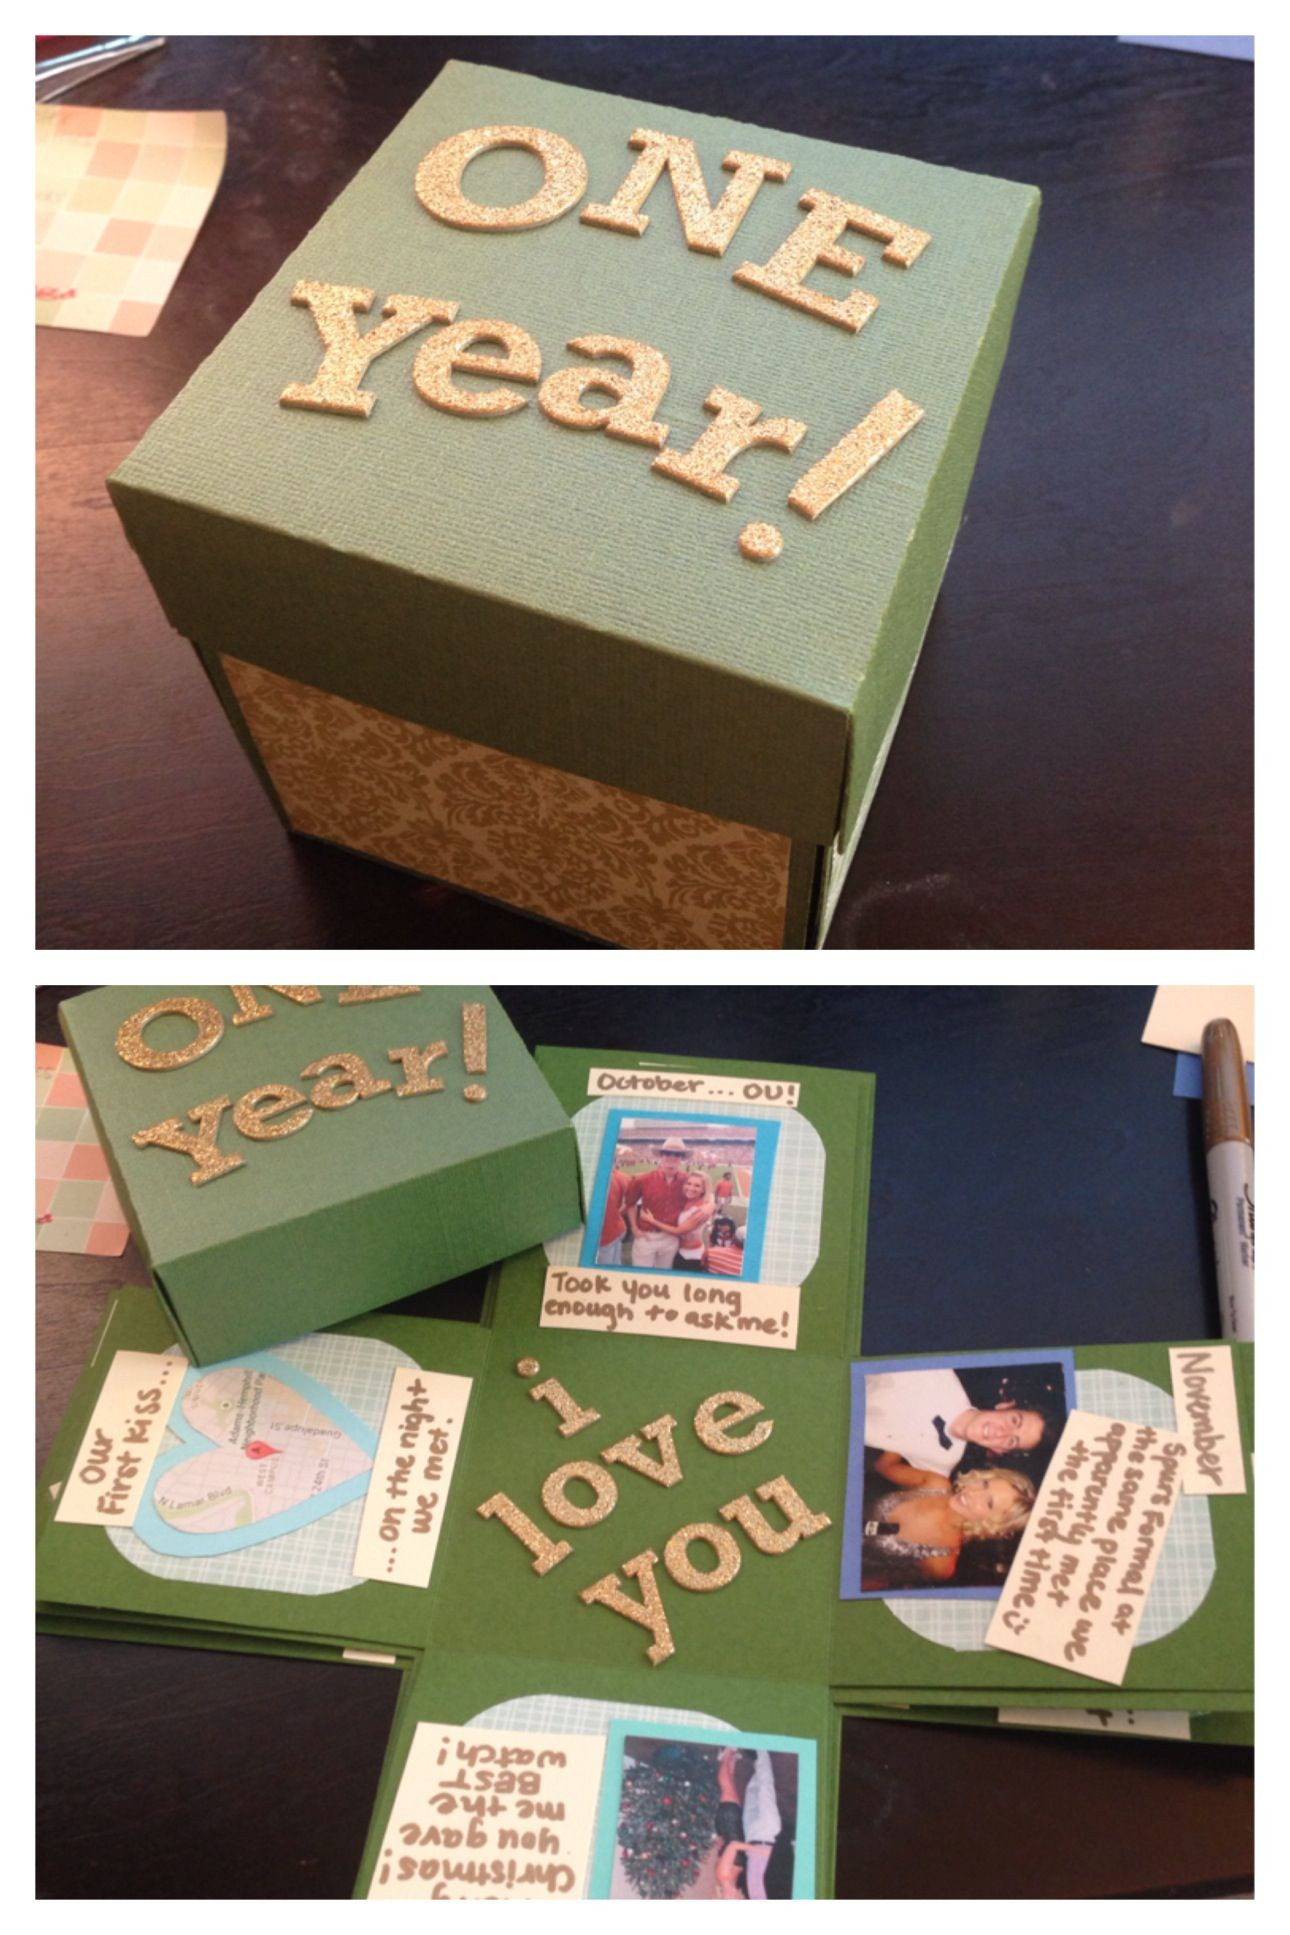 2 Year Anniversary Gift Ideas For My Boyfriend
 Boyfriend Anniversary Gifts on Pinterest